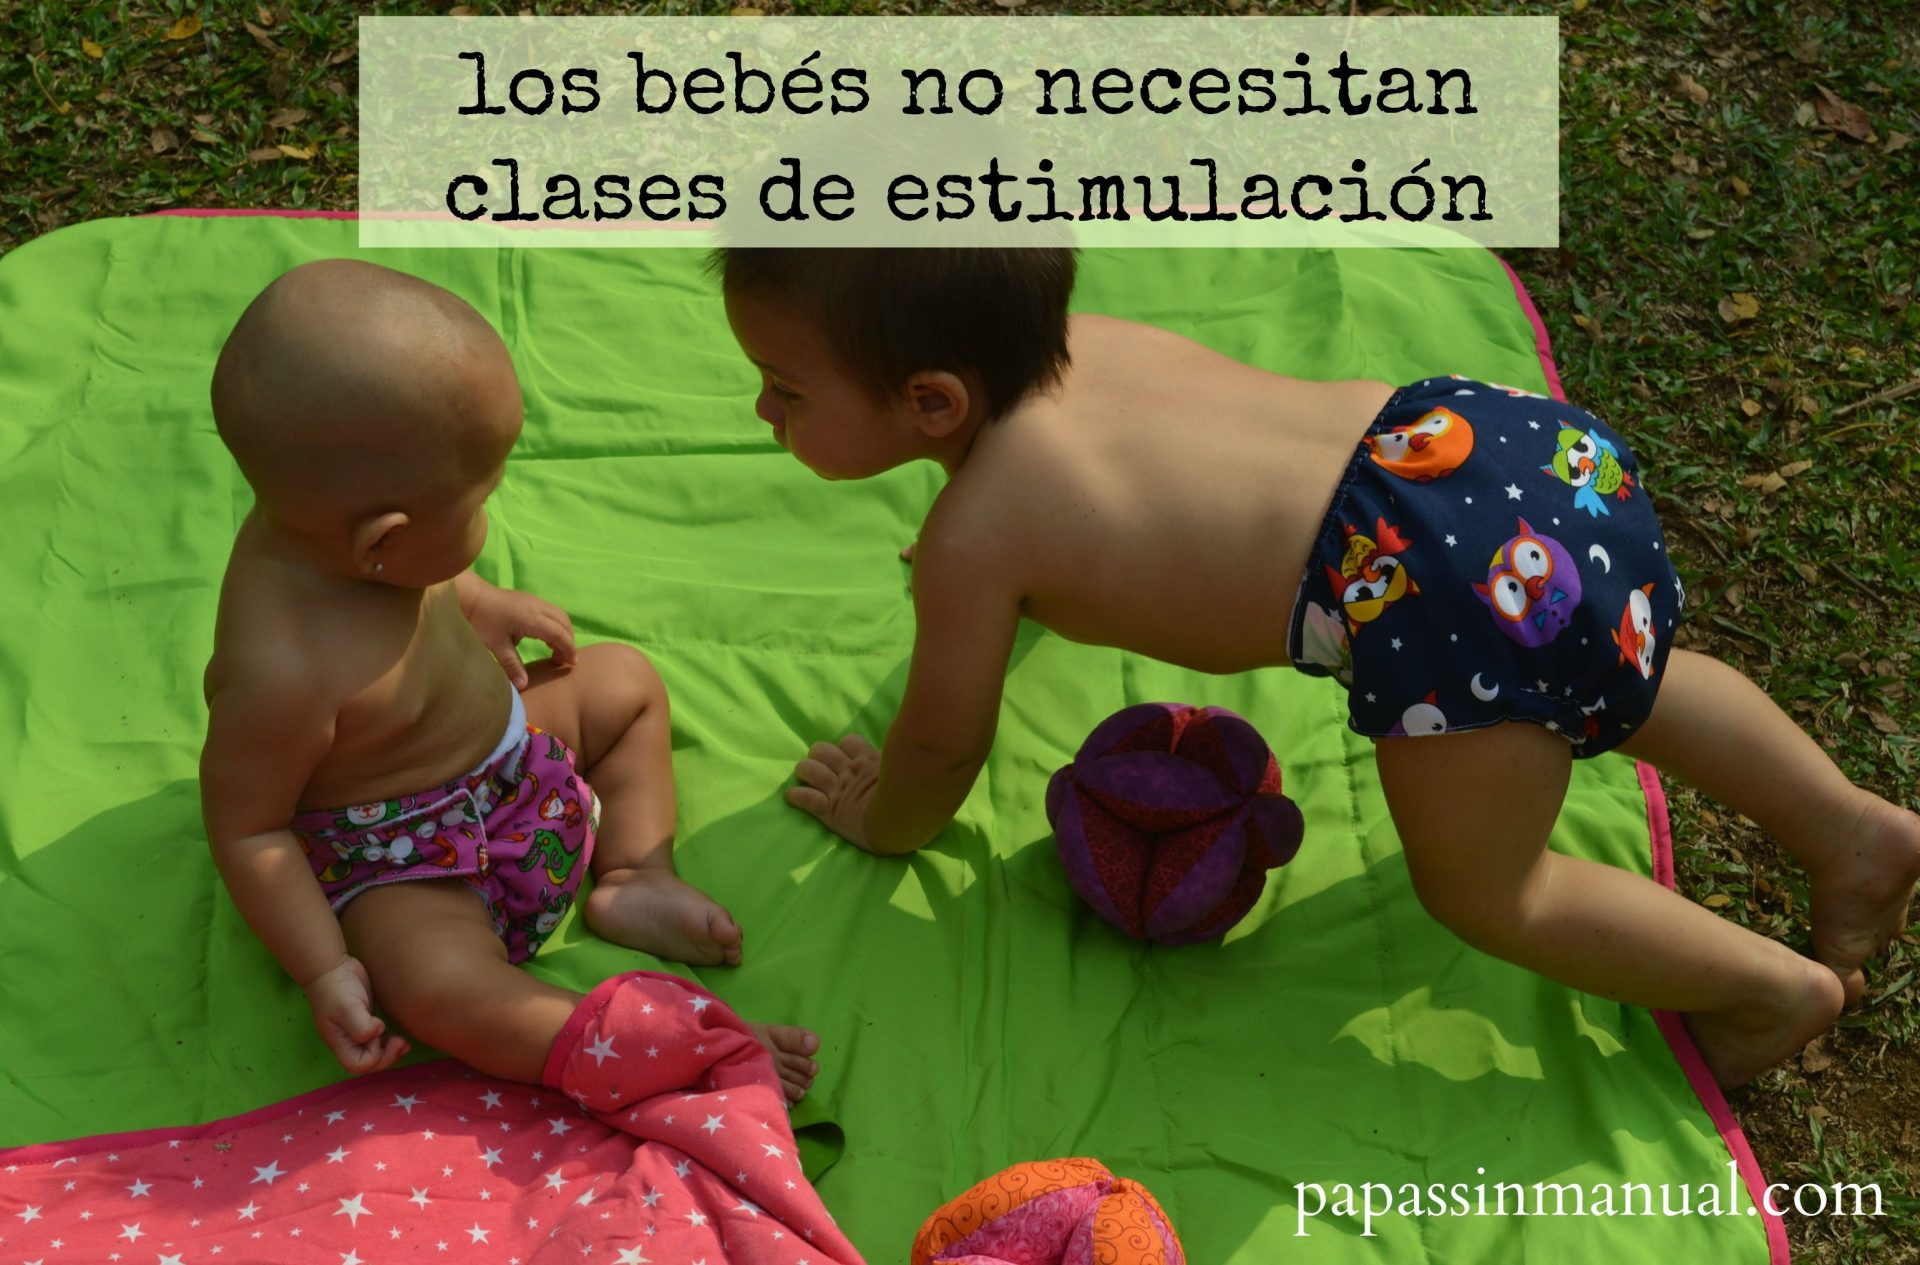 Los bebés no necesitan clases de estimulación